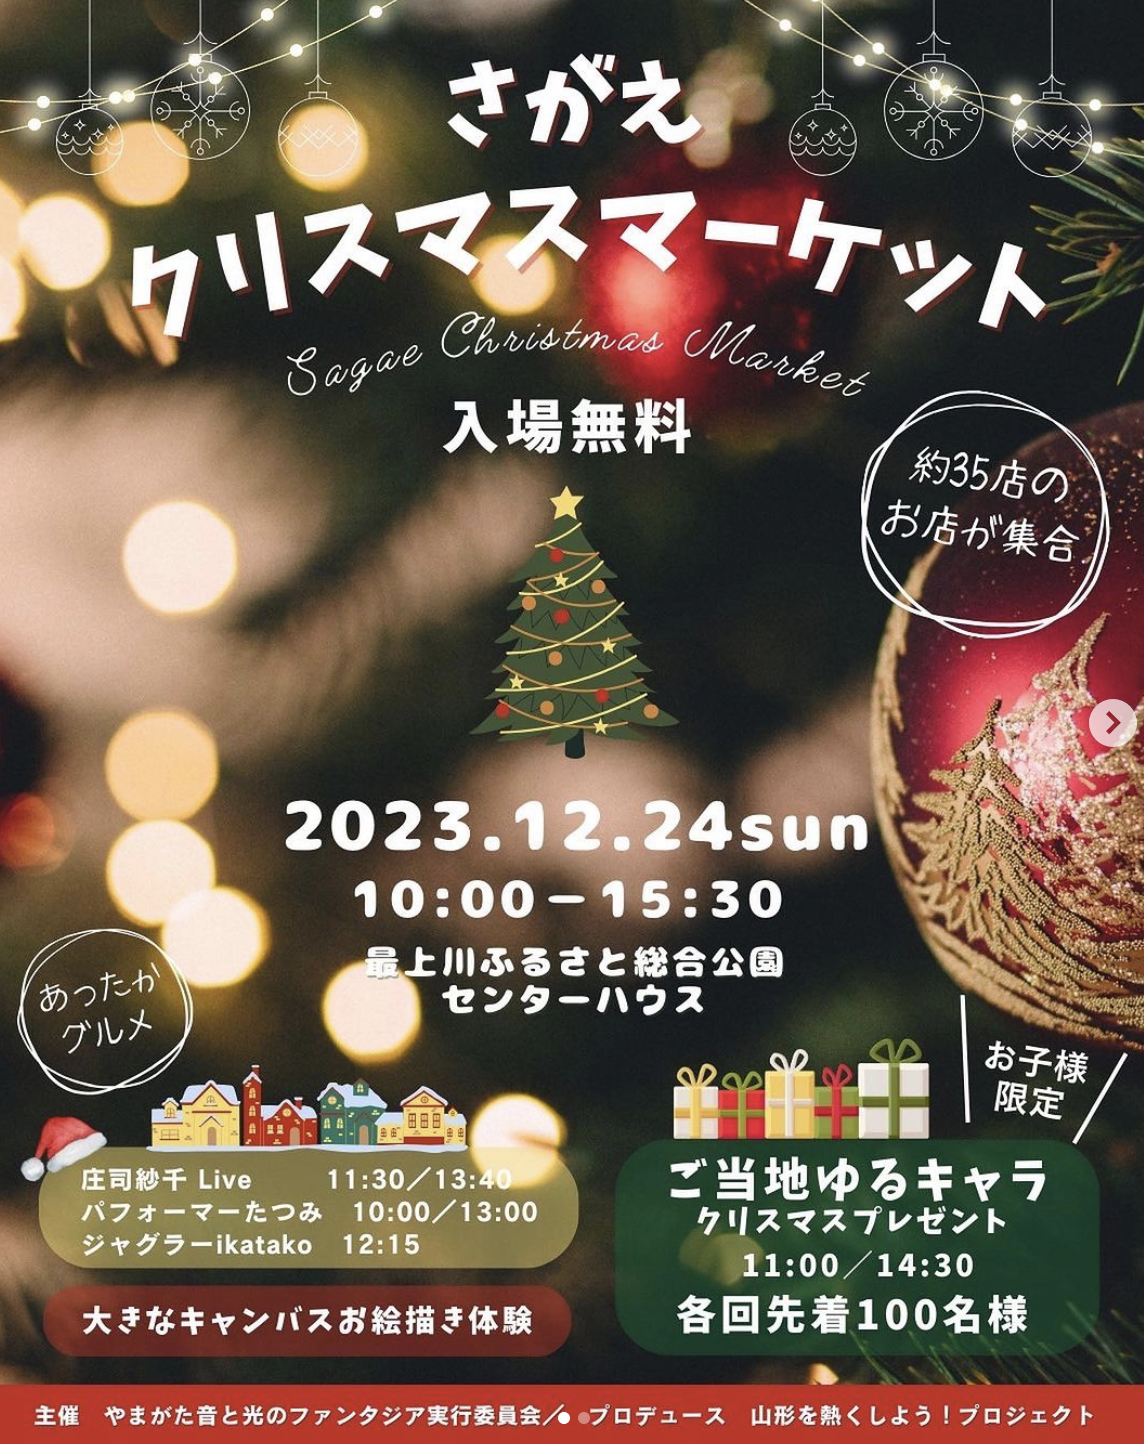 【山形イベント情報12/24】さがえクリスマスマーケットが開催